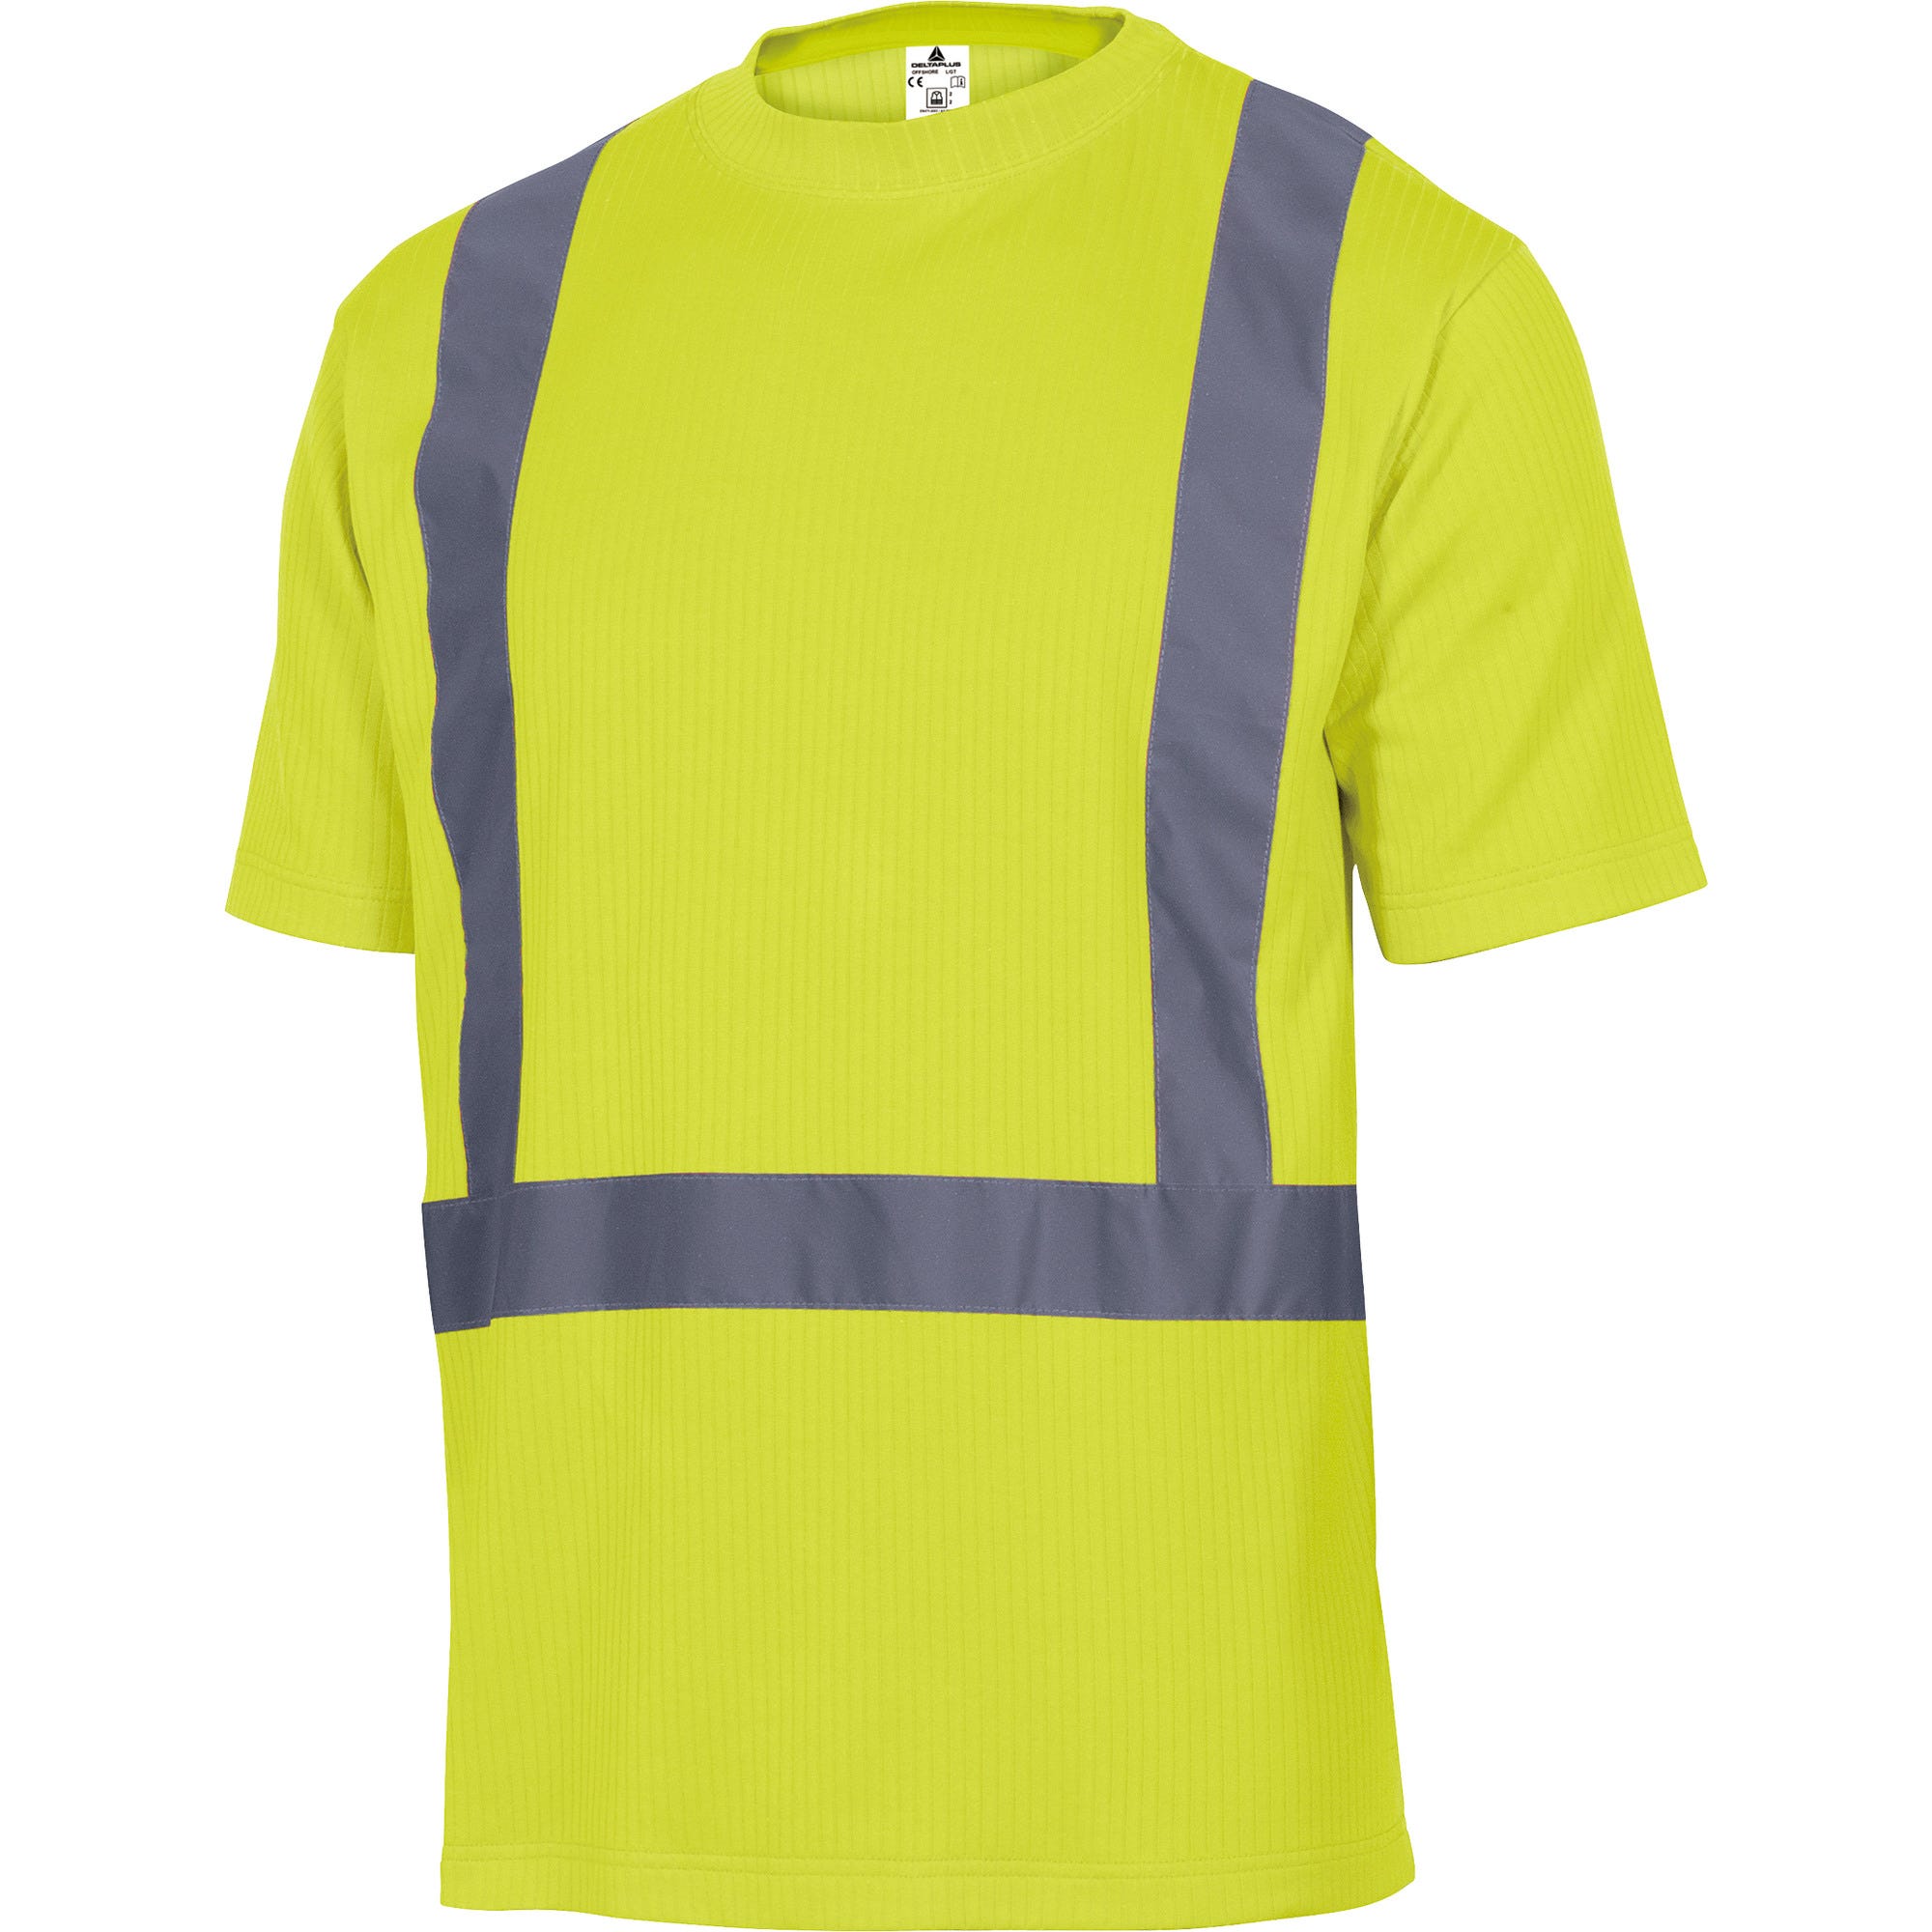 Tee shirt haute visibilité manches courtes jaune Taille XL - DELTA PLUS 0